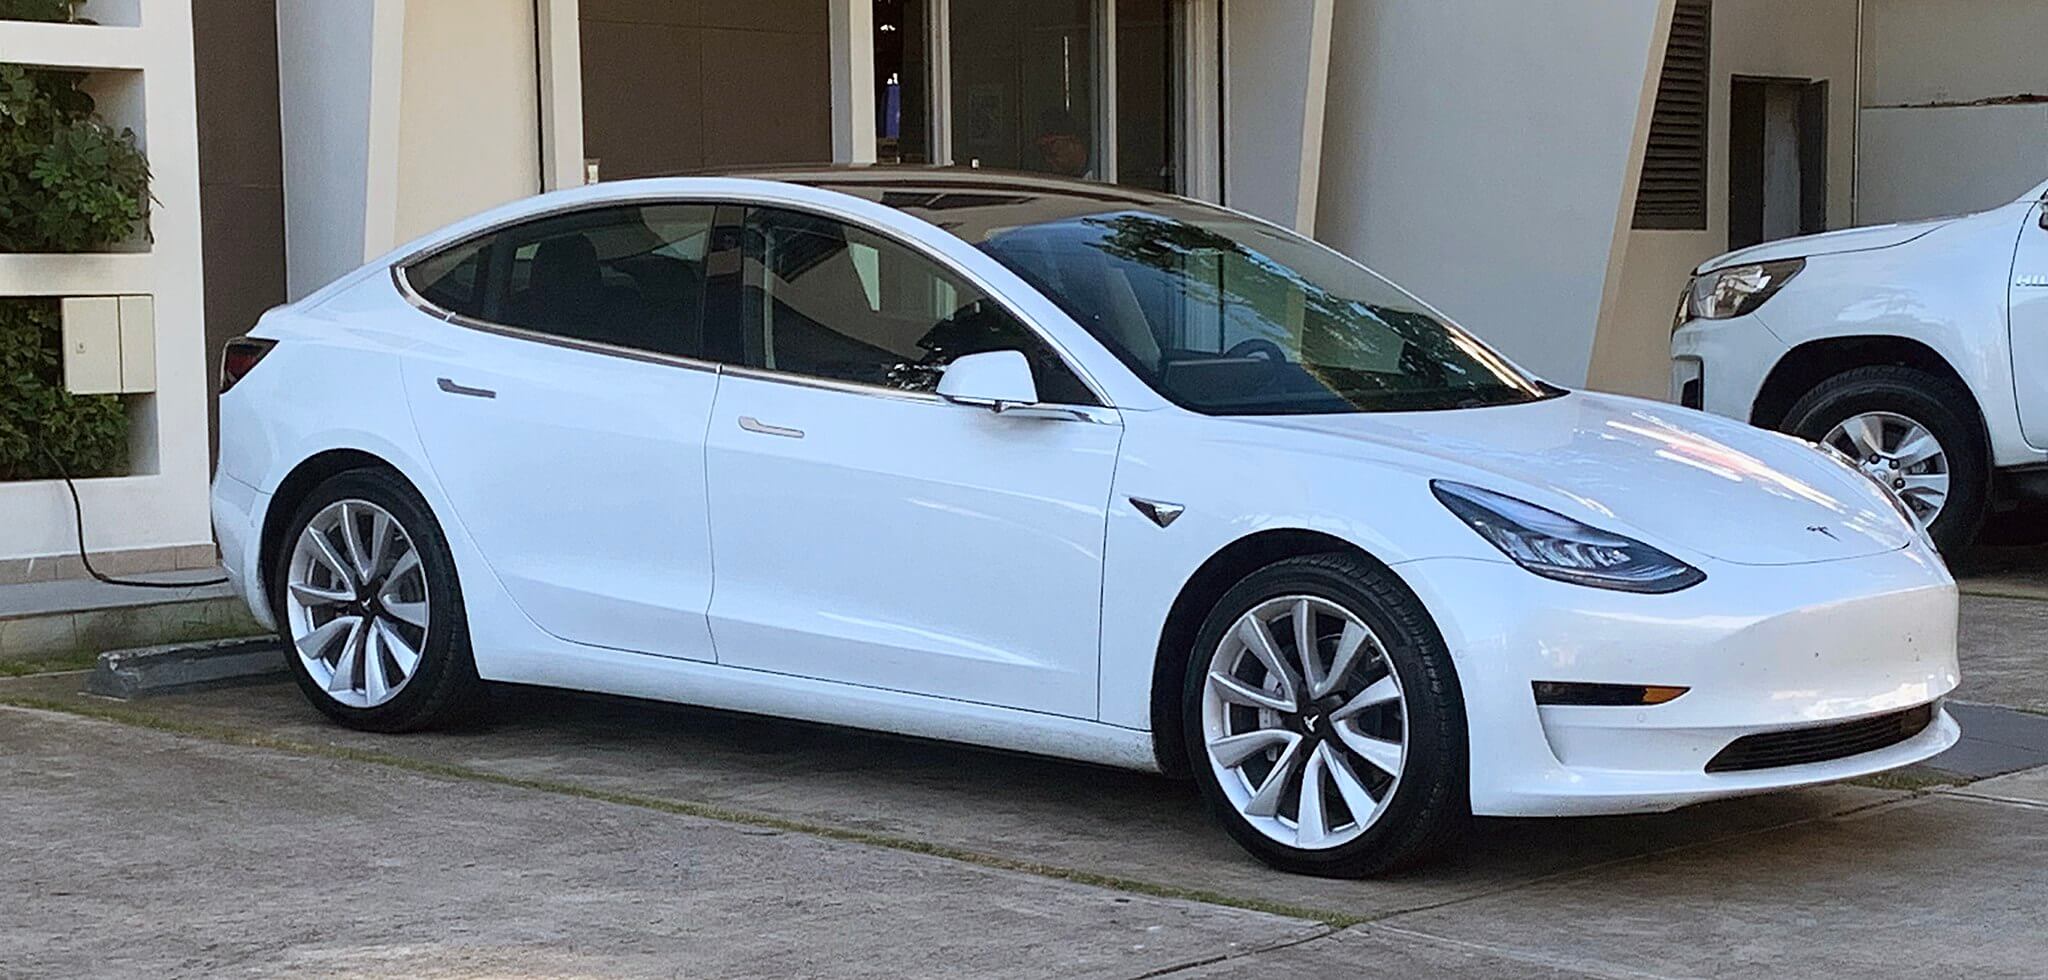 Сейчас Tesla базируется в Техасе, но по-прежнему доминирует в Калифорнии.